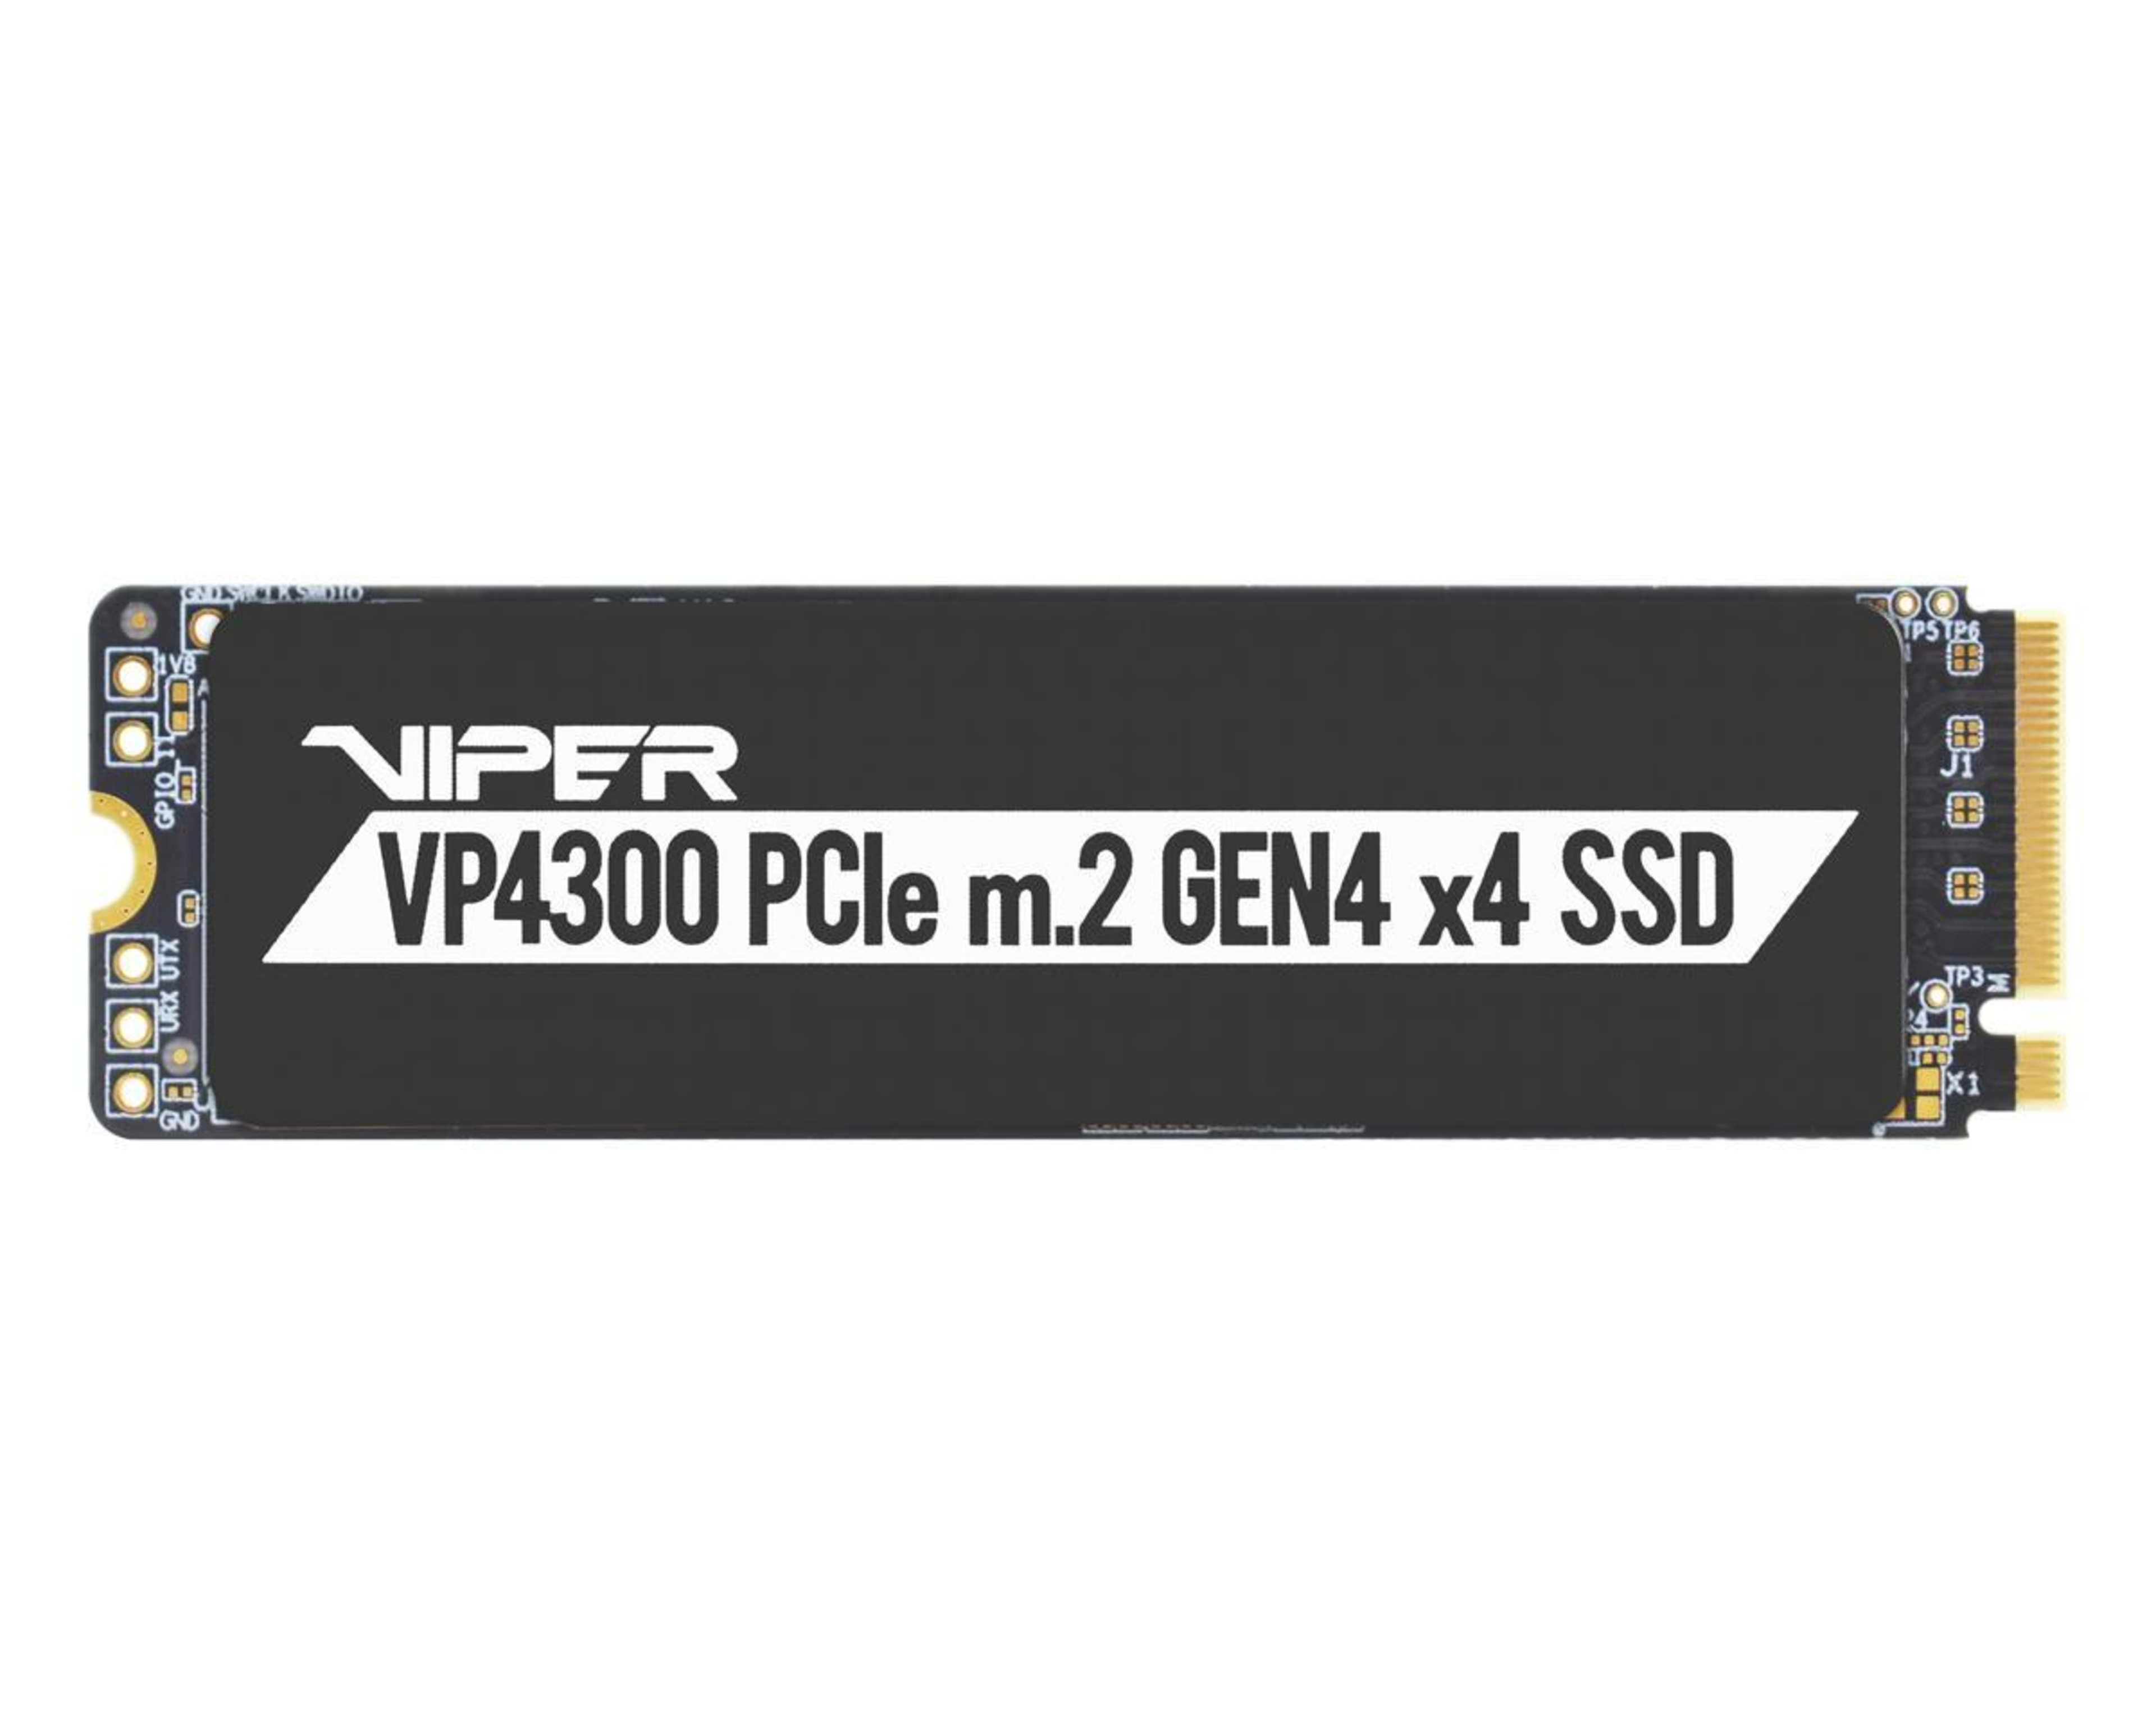 Patriot P400 Lite 2TB Internal SSD - NVMe PCIe Gen 4x4 - M.2 2280 - Solid  State Drive